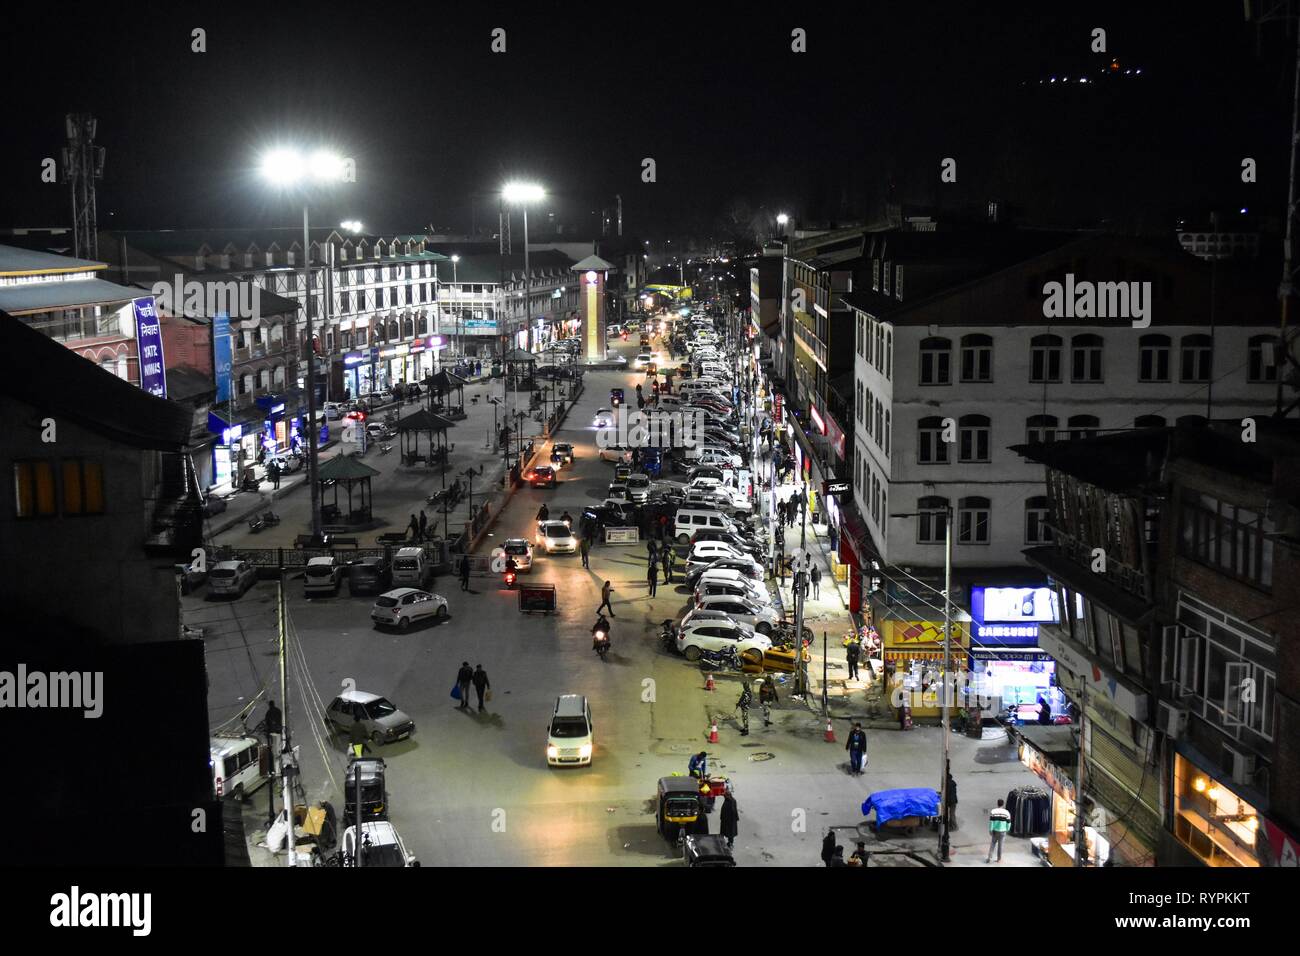 Persone visto commerciale occupato a un hub commerciale Lal chowk durante le ore notturne in Srinagar Kashmir. Il Kashmir è il più settentrionale della regione geografica del subcontinente indiano. Attualmente è della contestazione di un territorio amministrato da tre paesi: India, Pakistan e Cina. Foto Stock